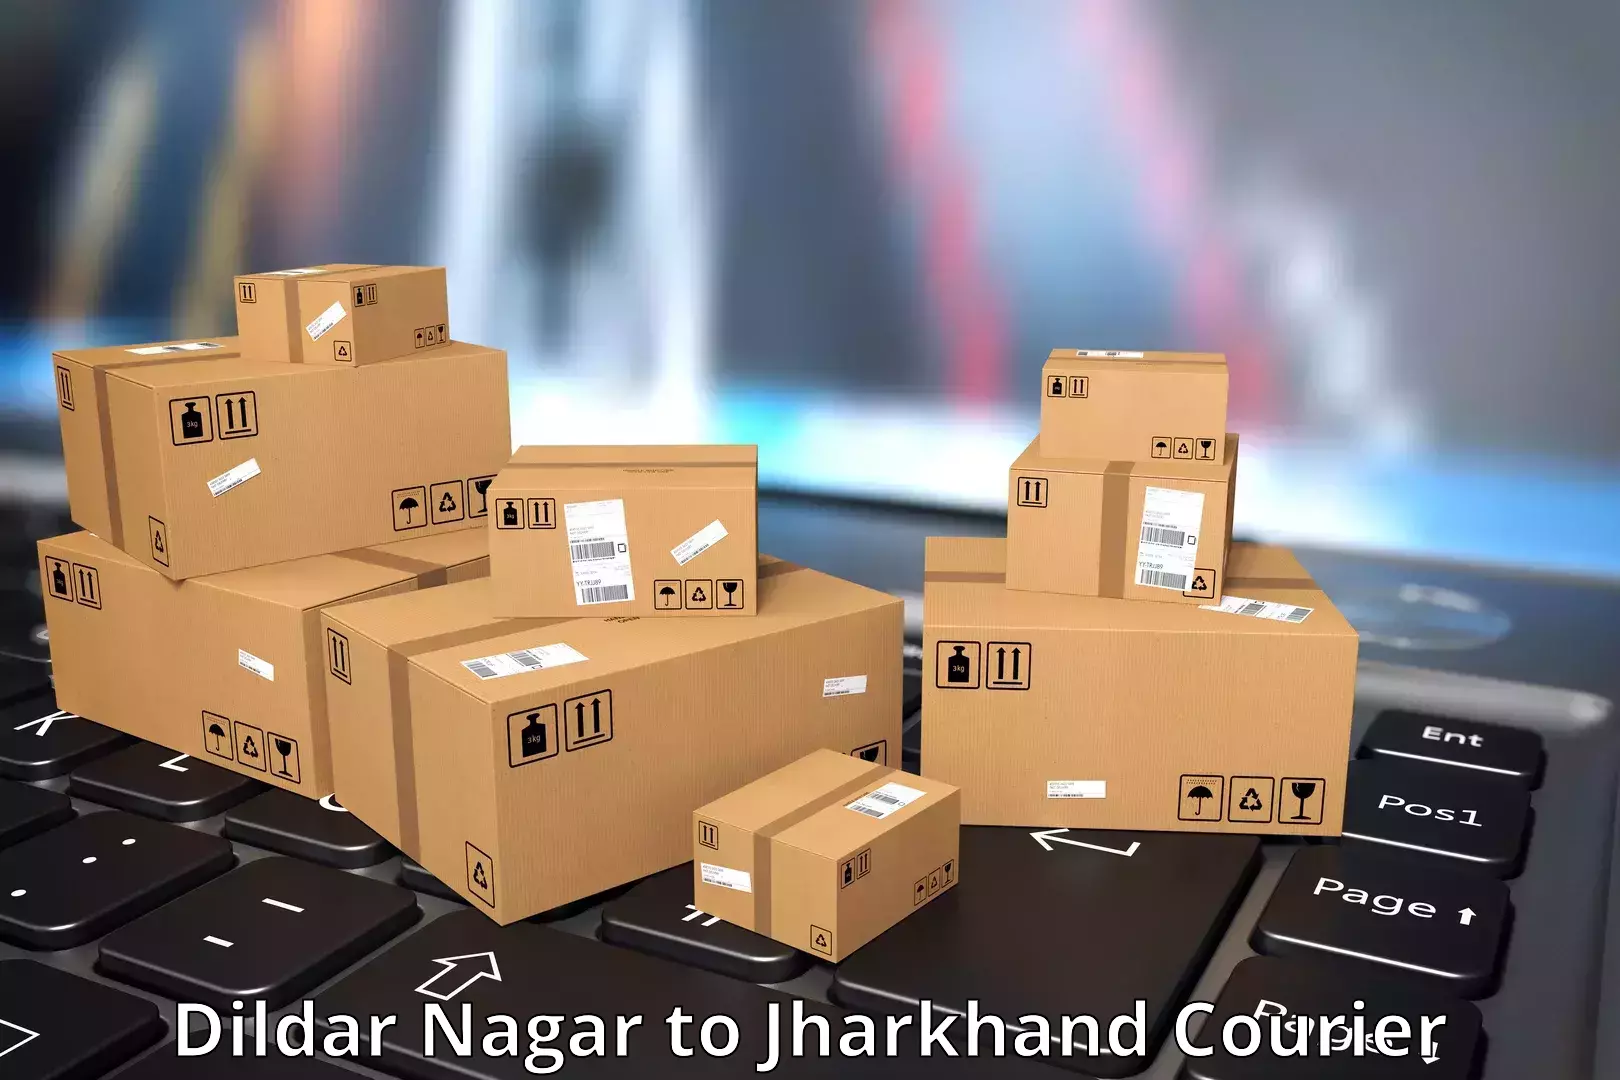 Comprehensive logistics solutions Dildar Nagar to Jharkhand